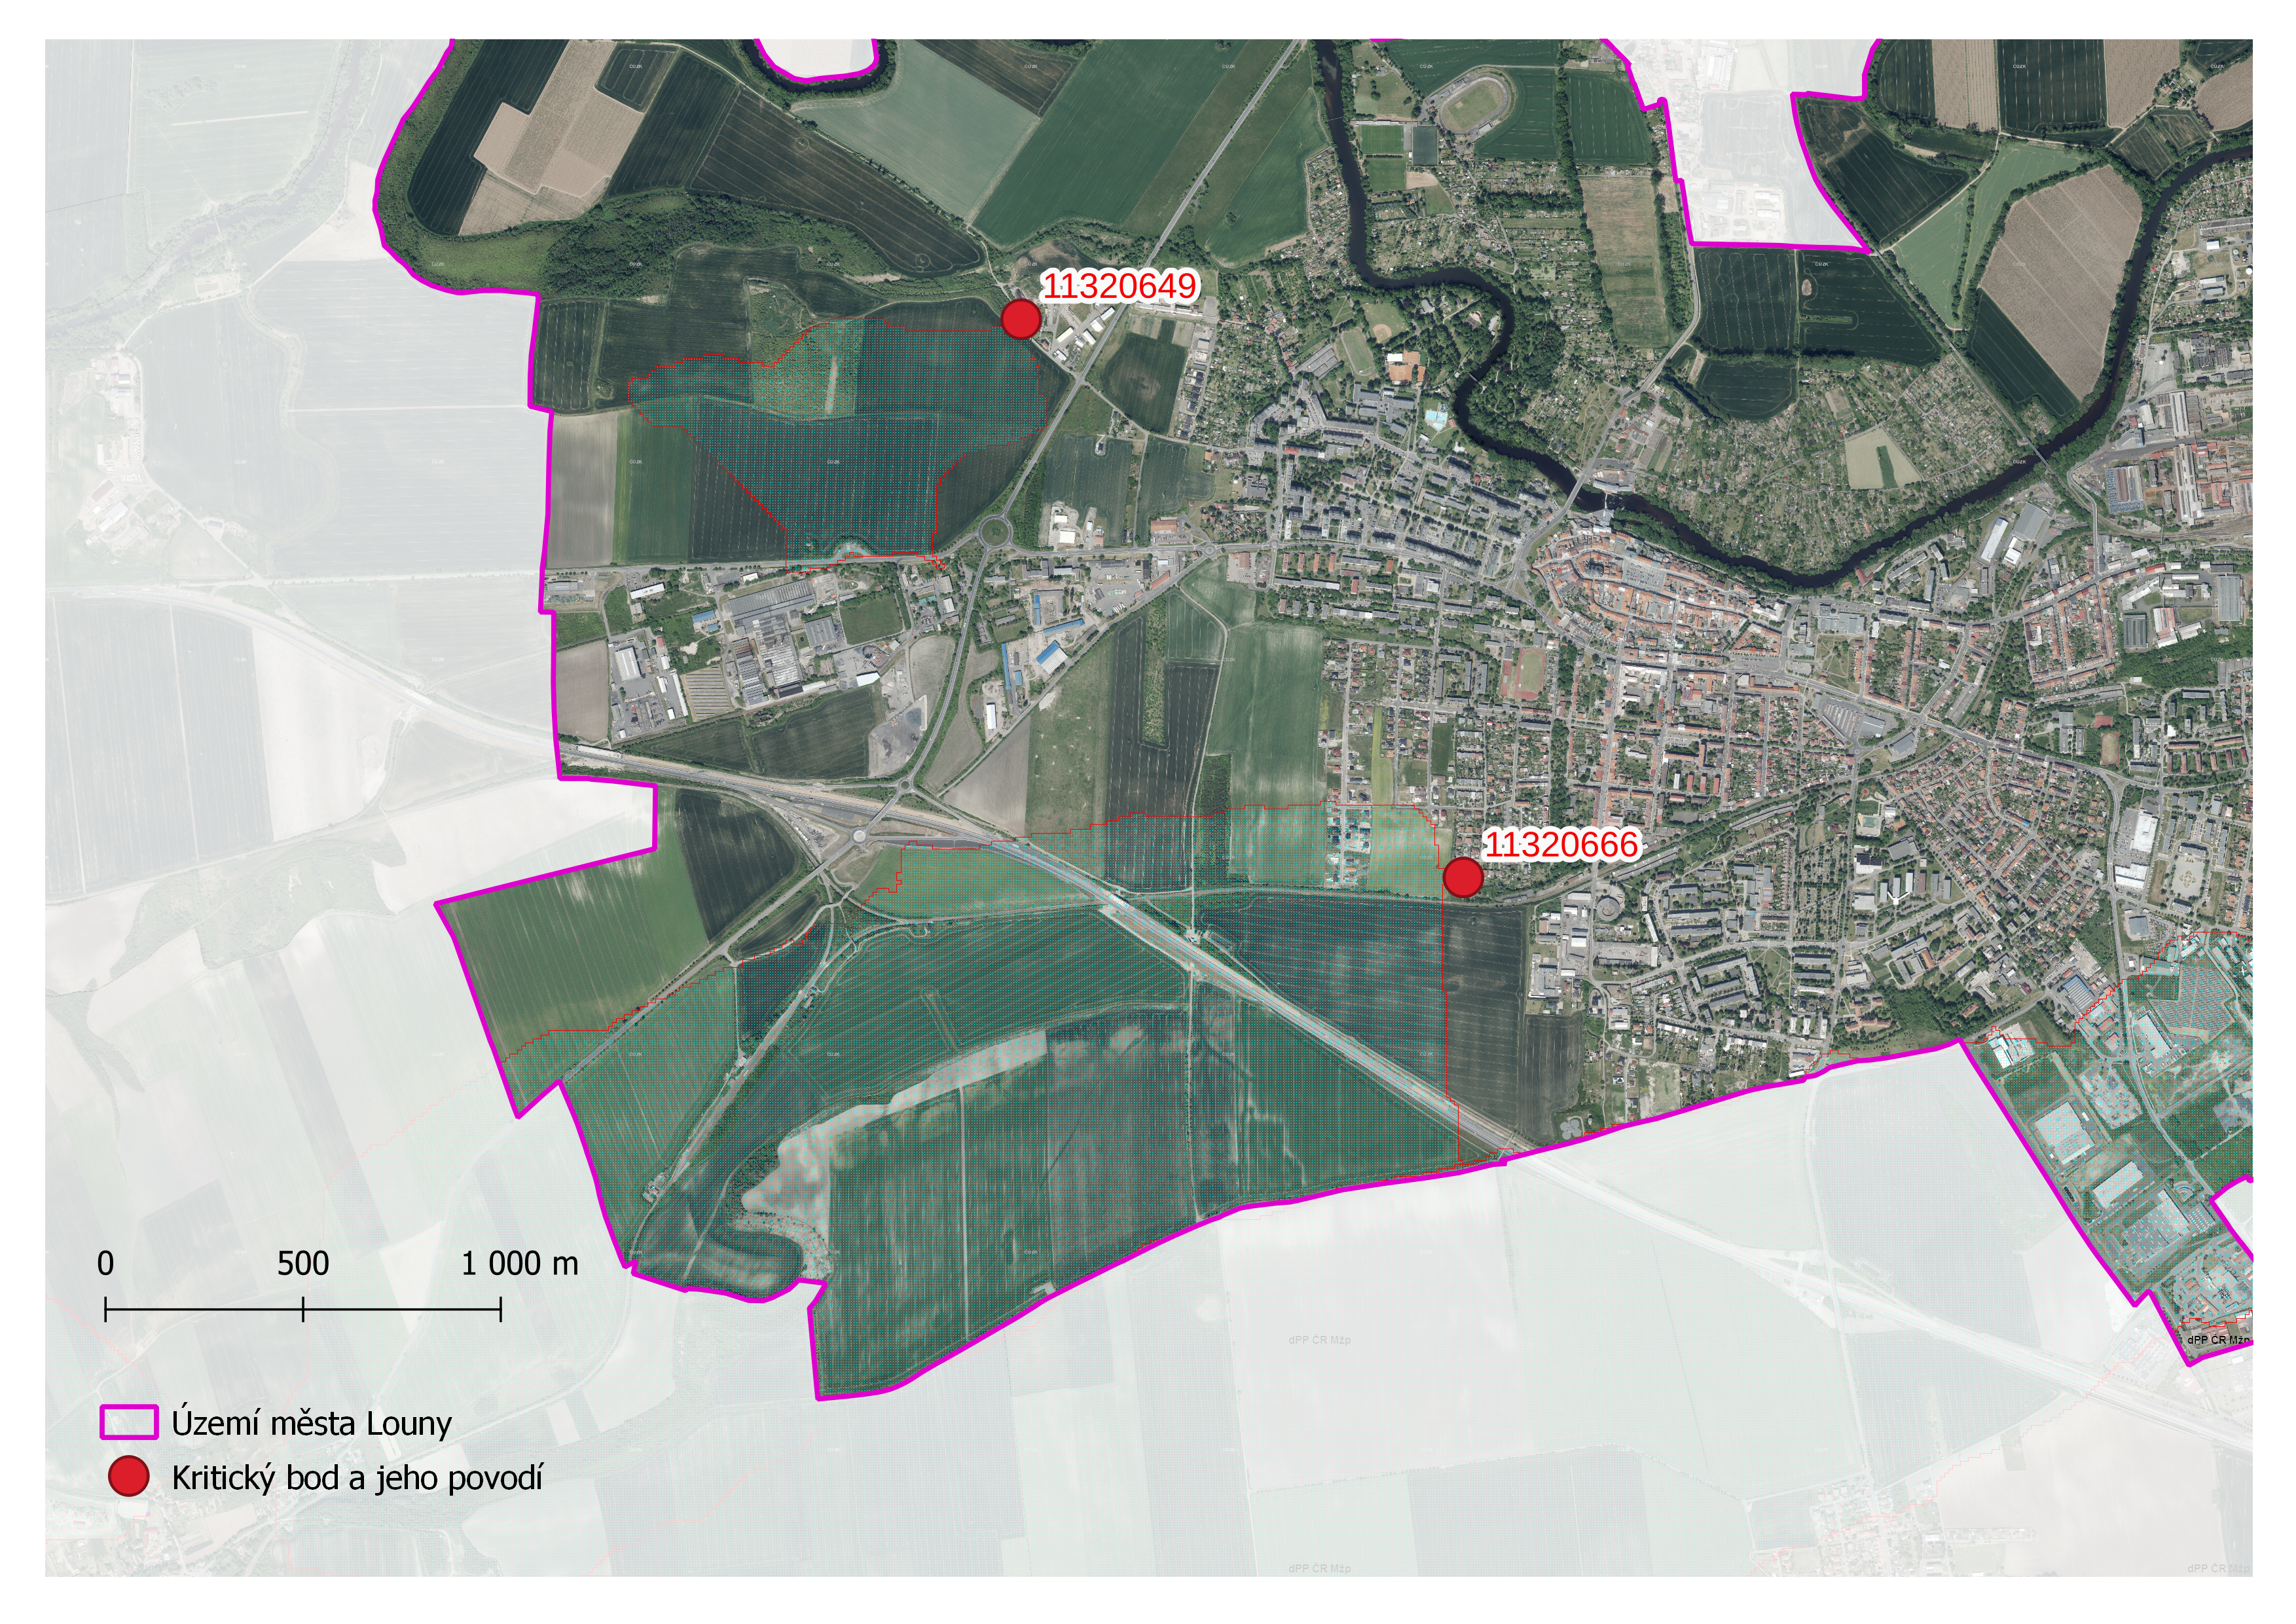 Zhodnocení vzniku přívalových povodní na území města Louny metodou kritických bodů